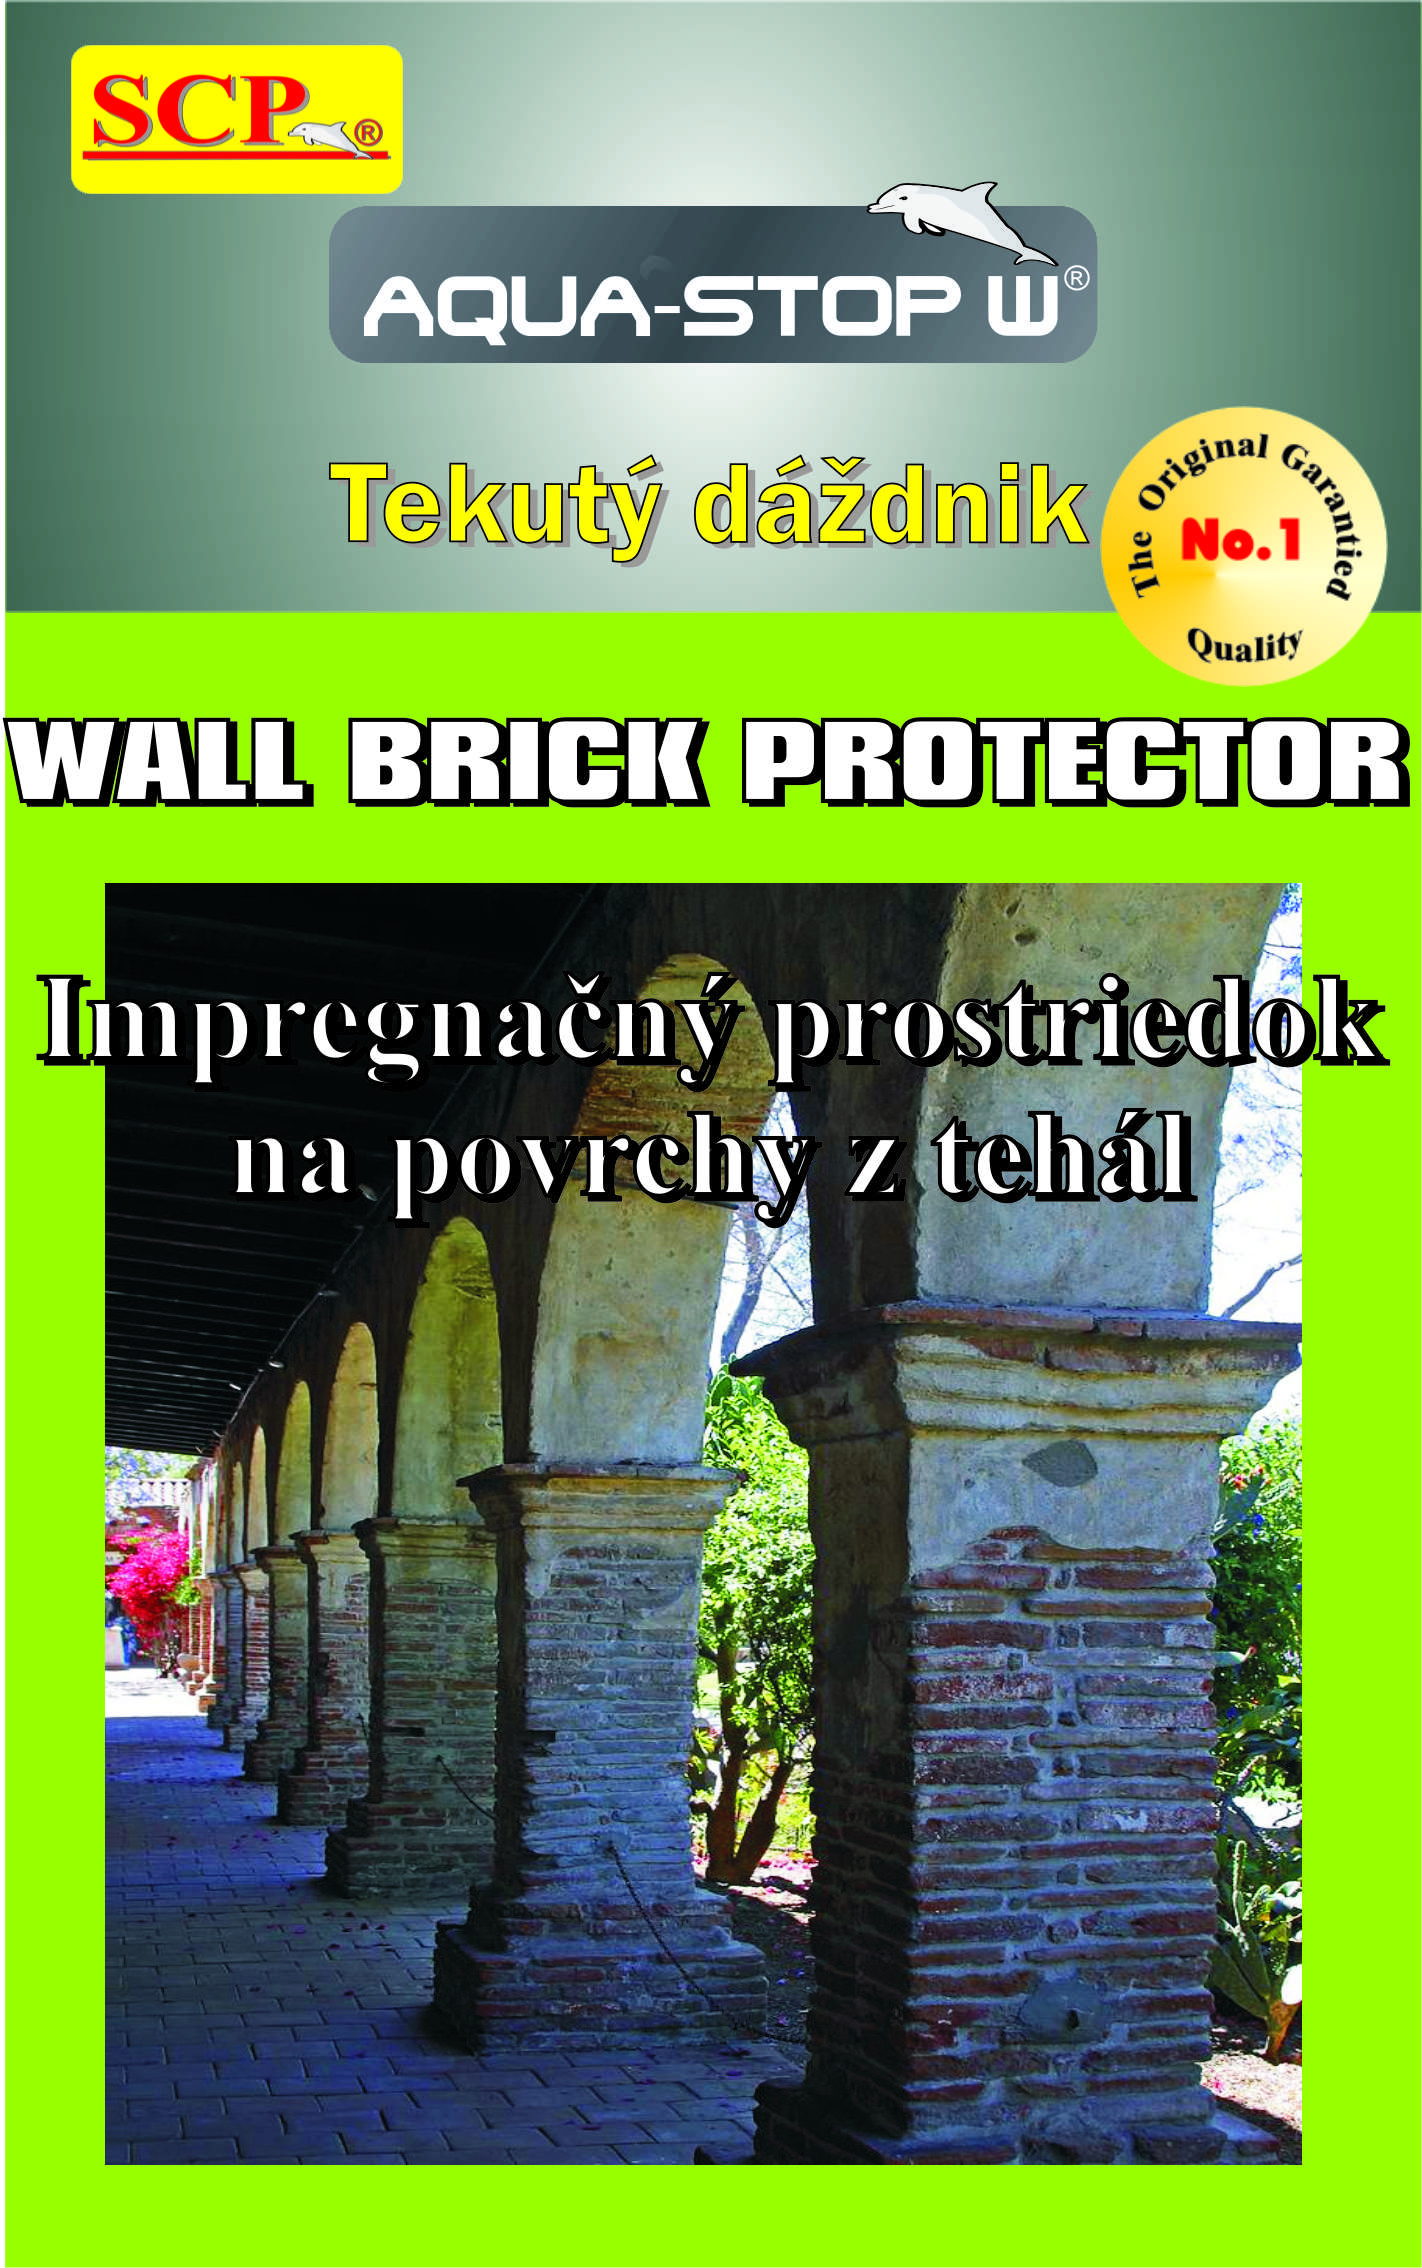 Wall Brick Protector